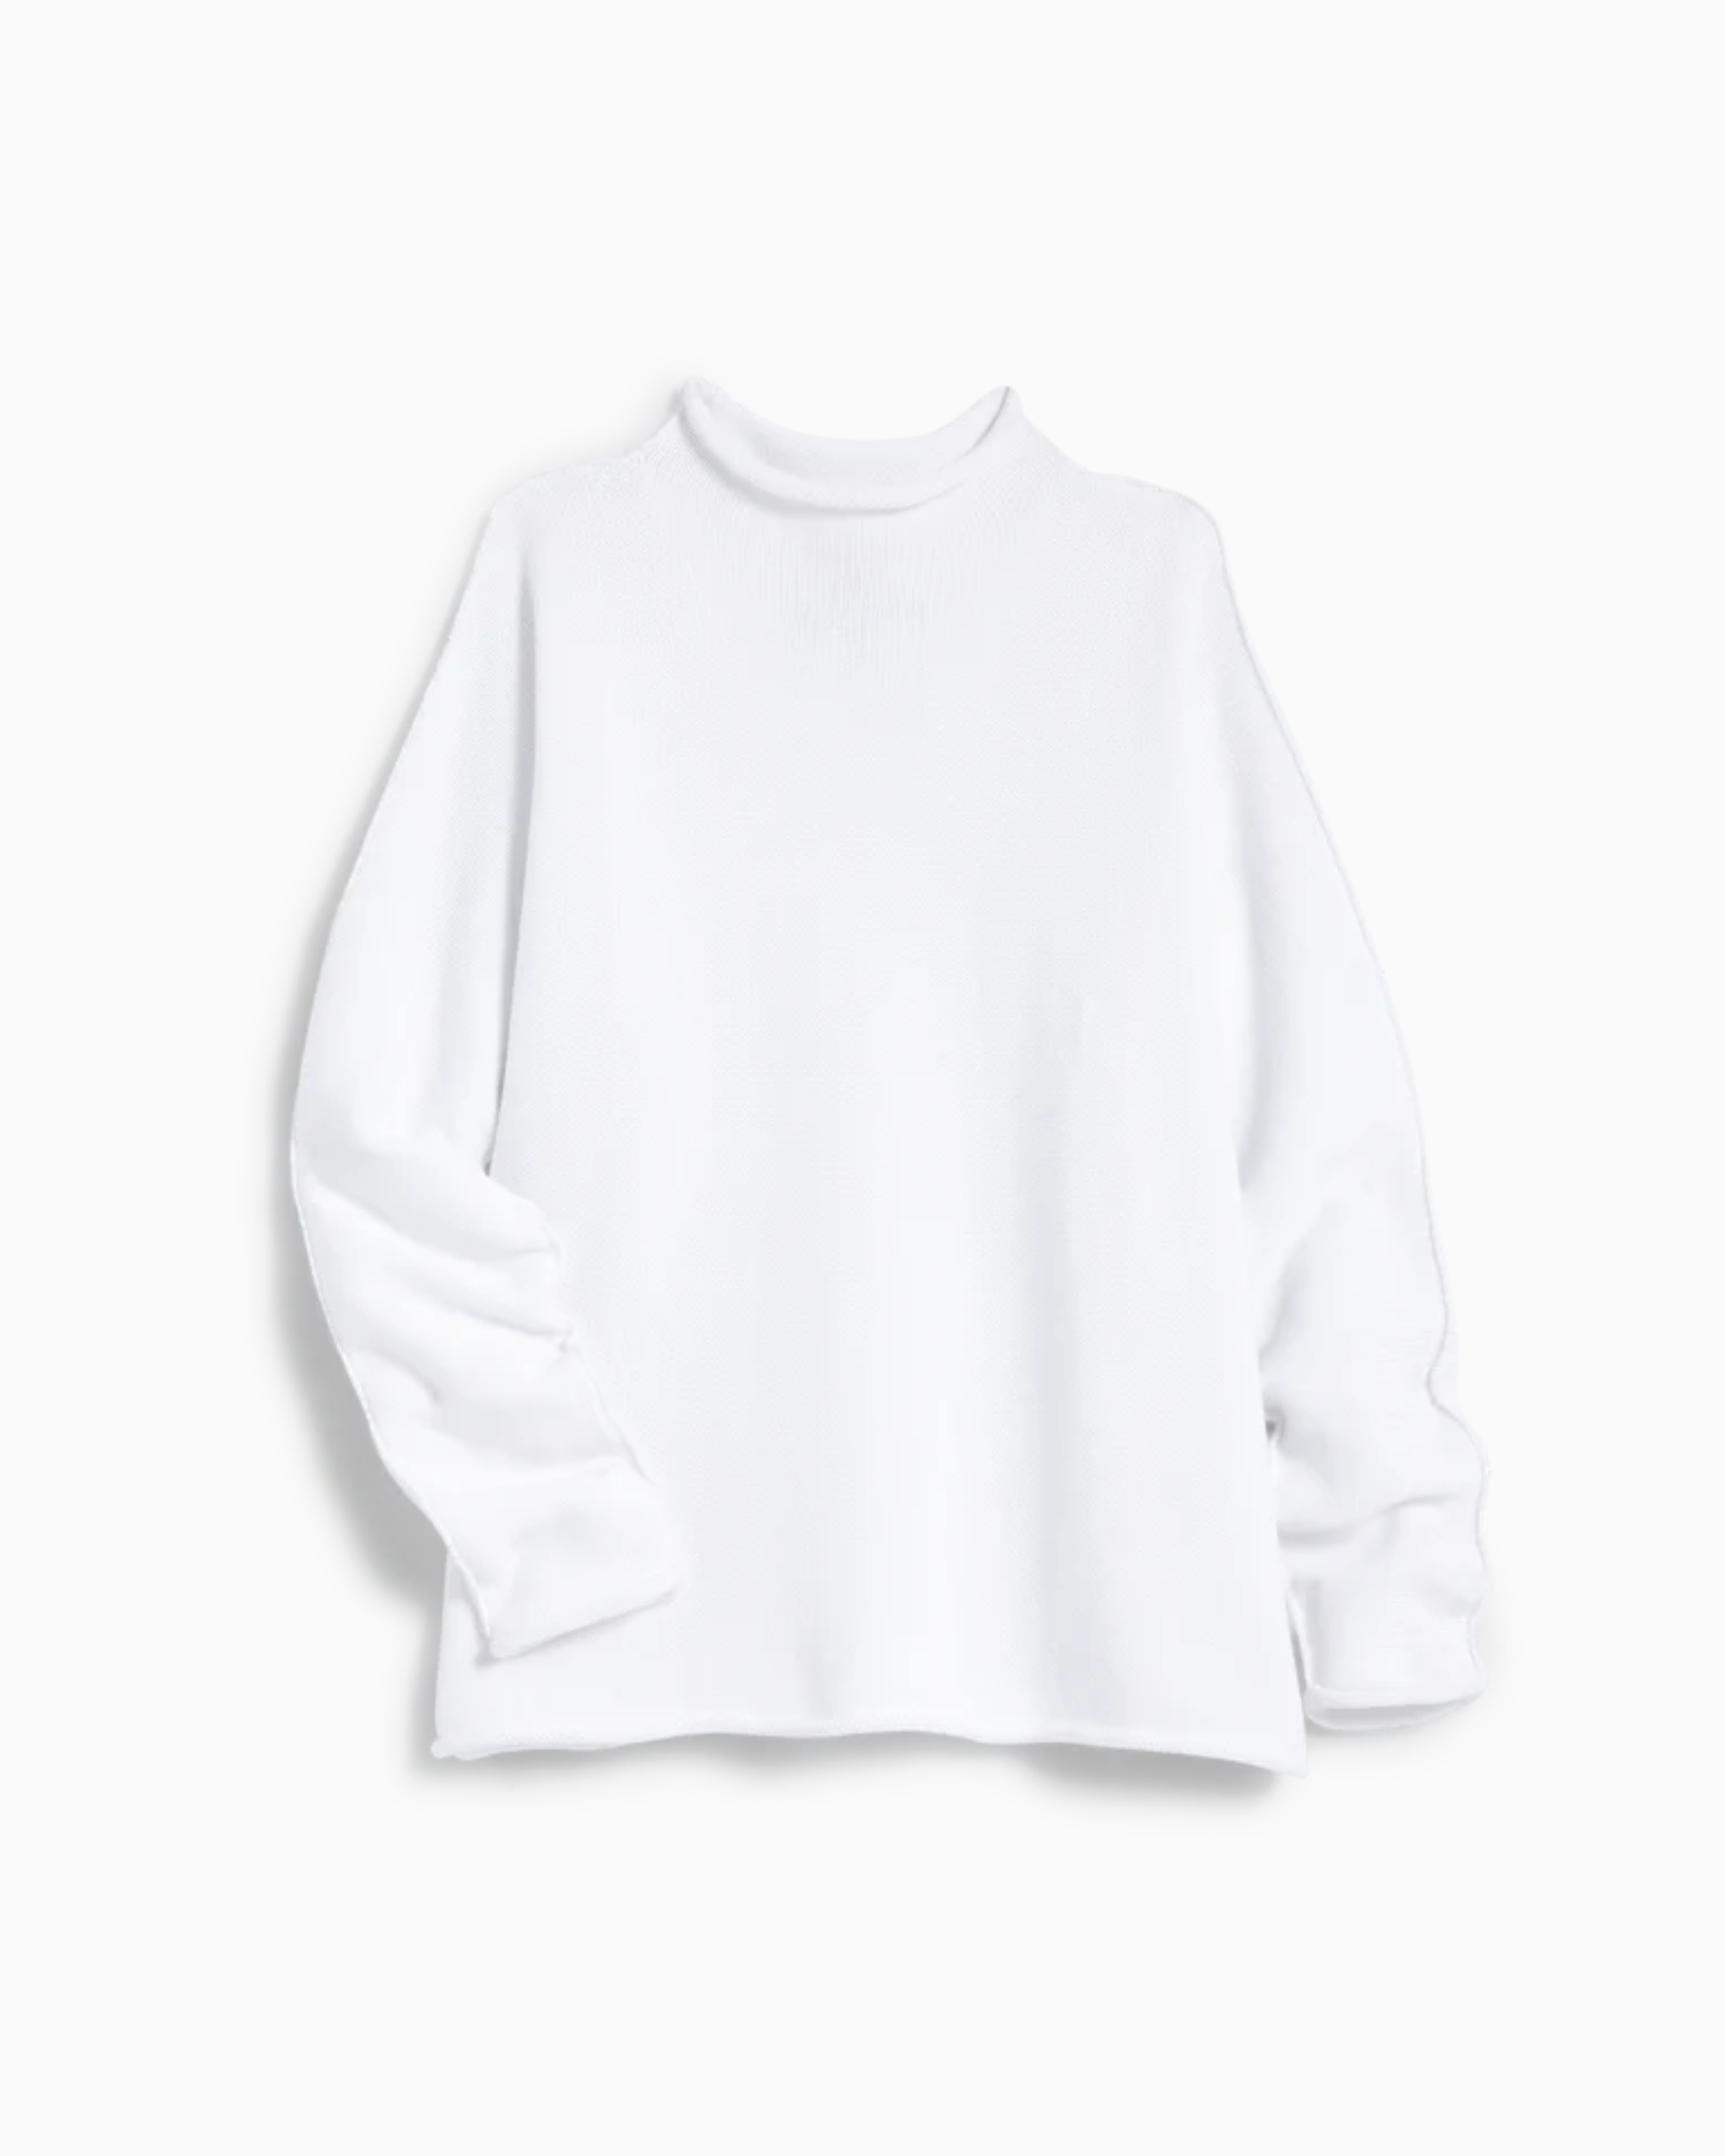 Frank & Eileen Monterey Sweater in White